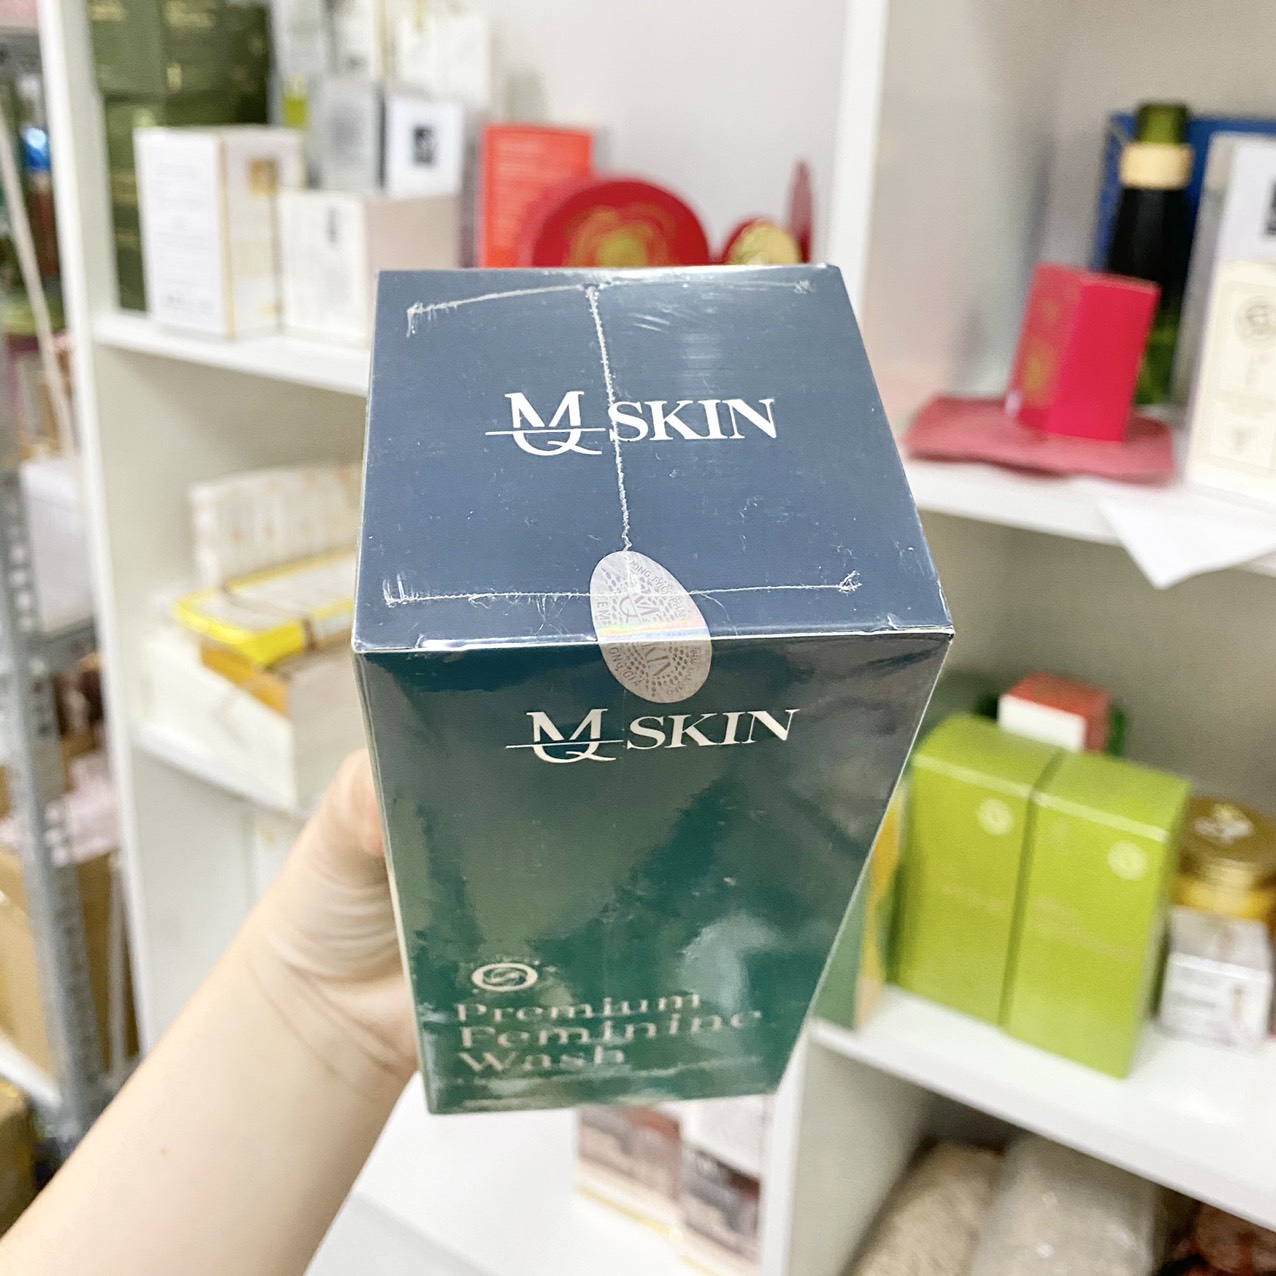 Dung dịch vệ sinh phụ nữ MQ Skin Premium Feminine wash chính hãng - 8936117150432